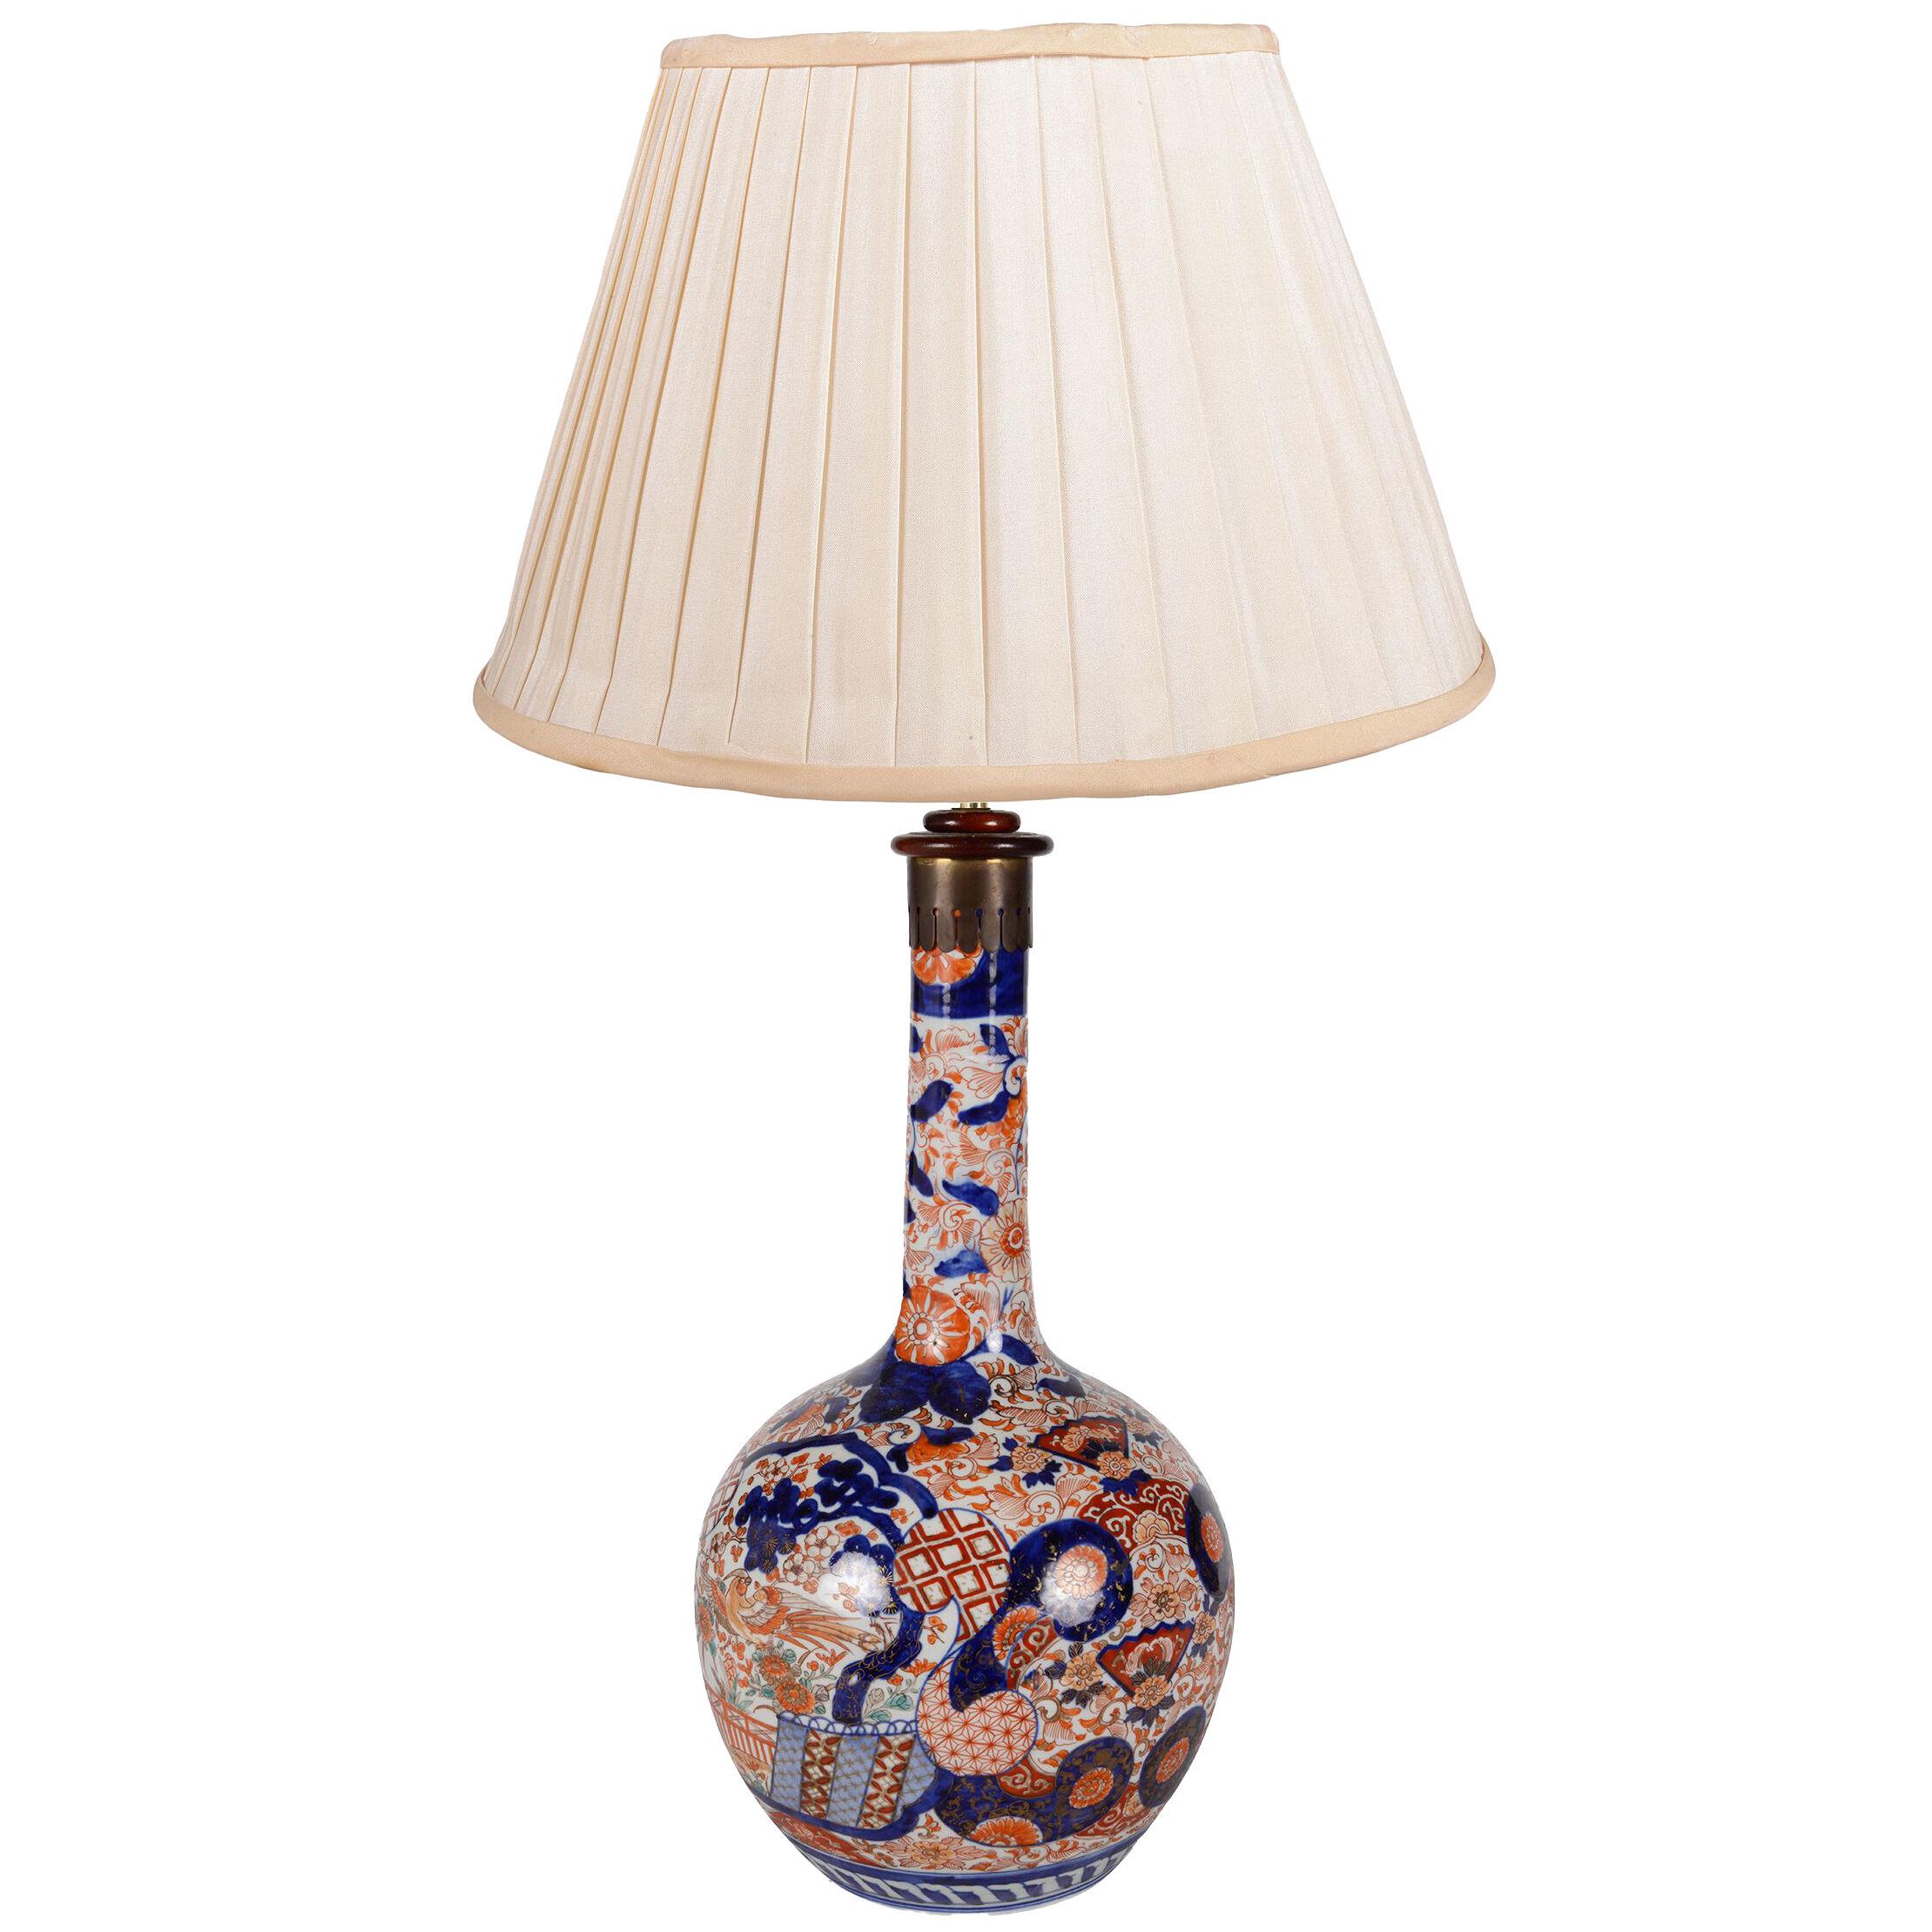 19th Century Japanese Imari vase / lamp.